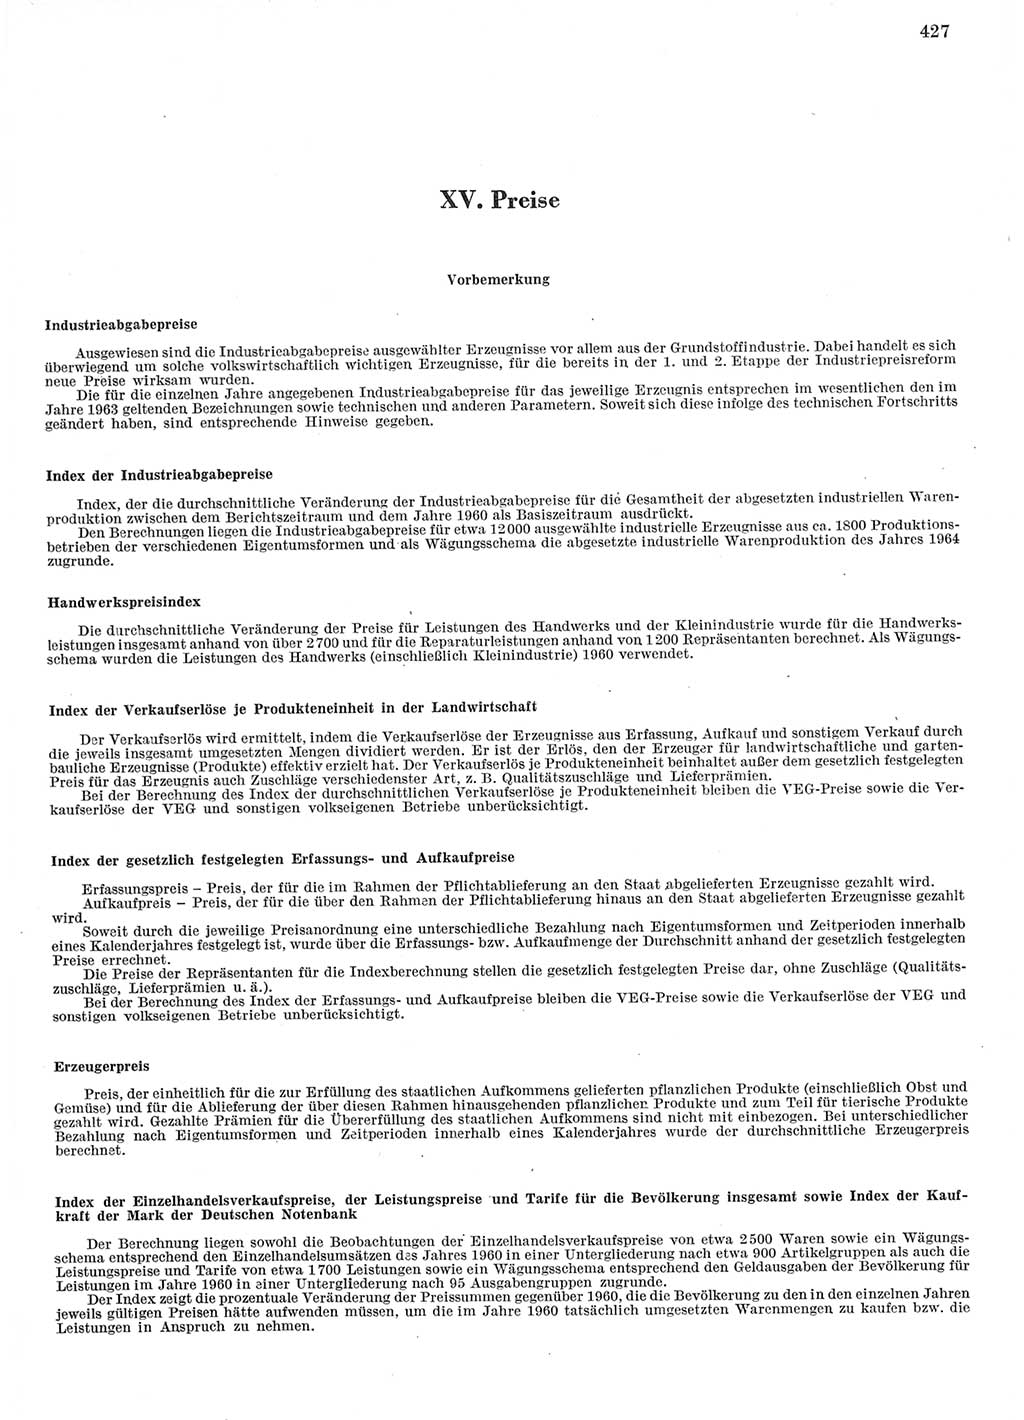 Statistisches Jahrbuch der Deutschen Demokratischen Republik (DDR) 1967, Seite 427 (Stat. Jb. DDR 1967, S. 427)